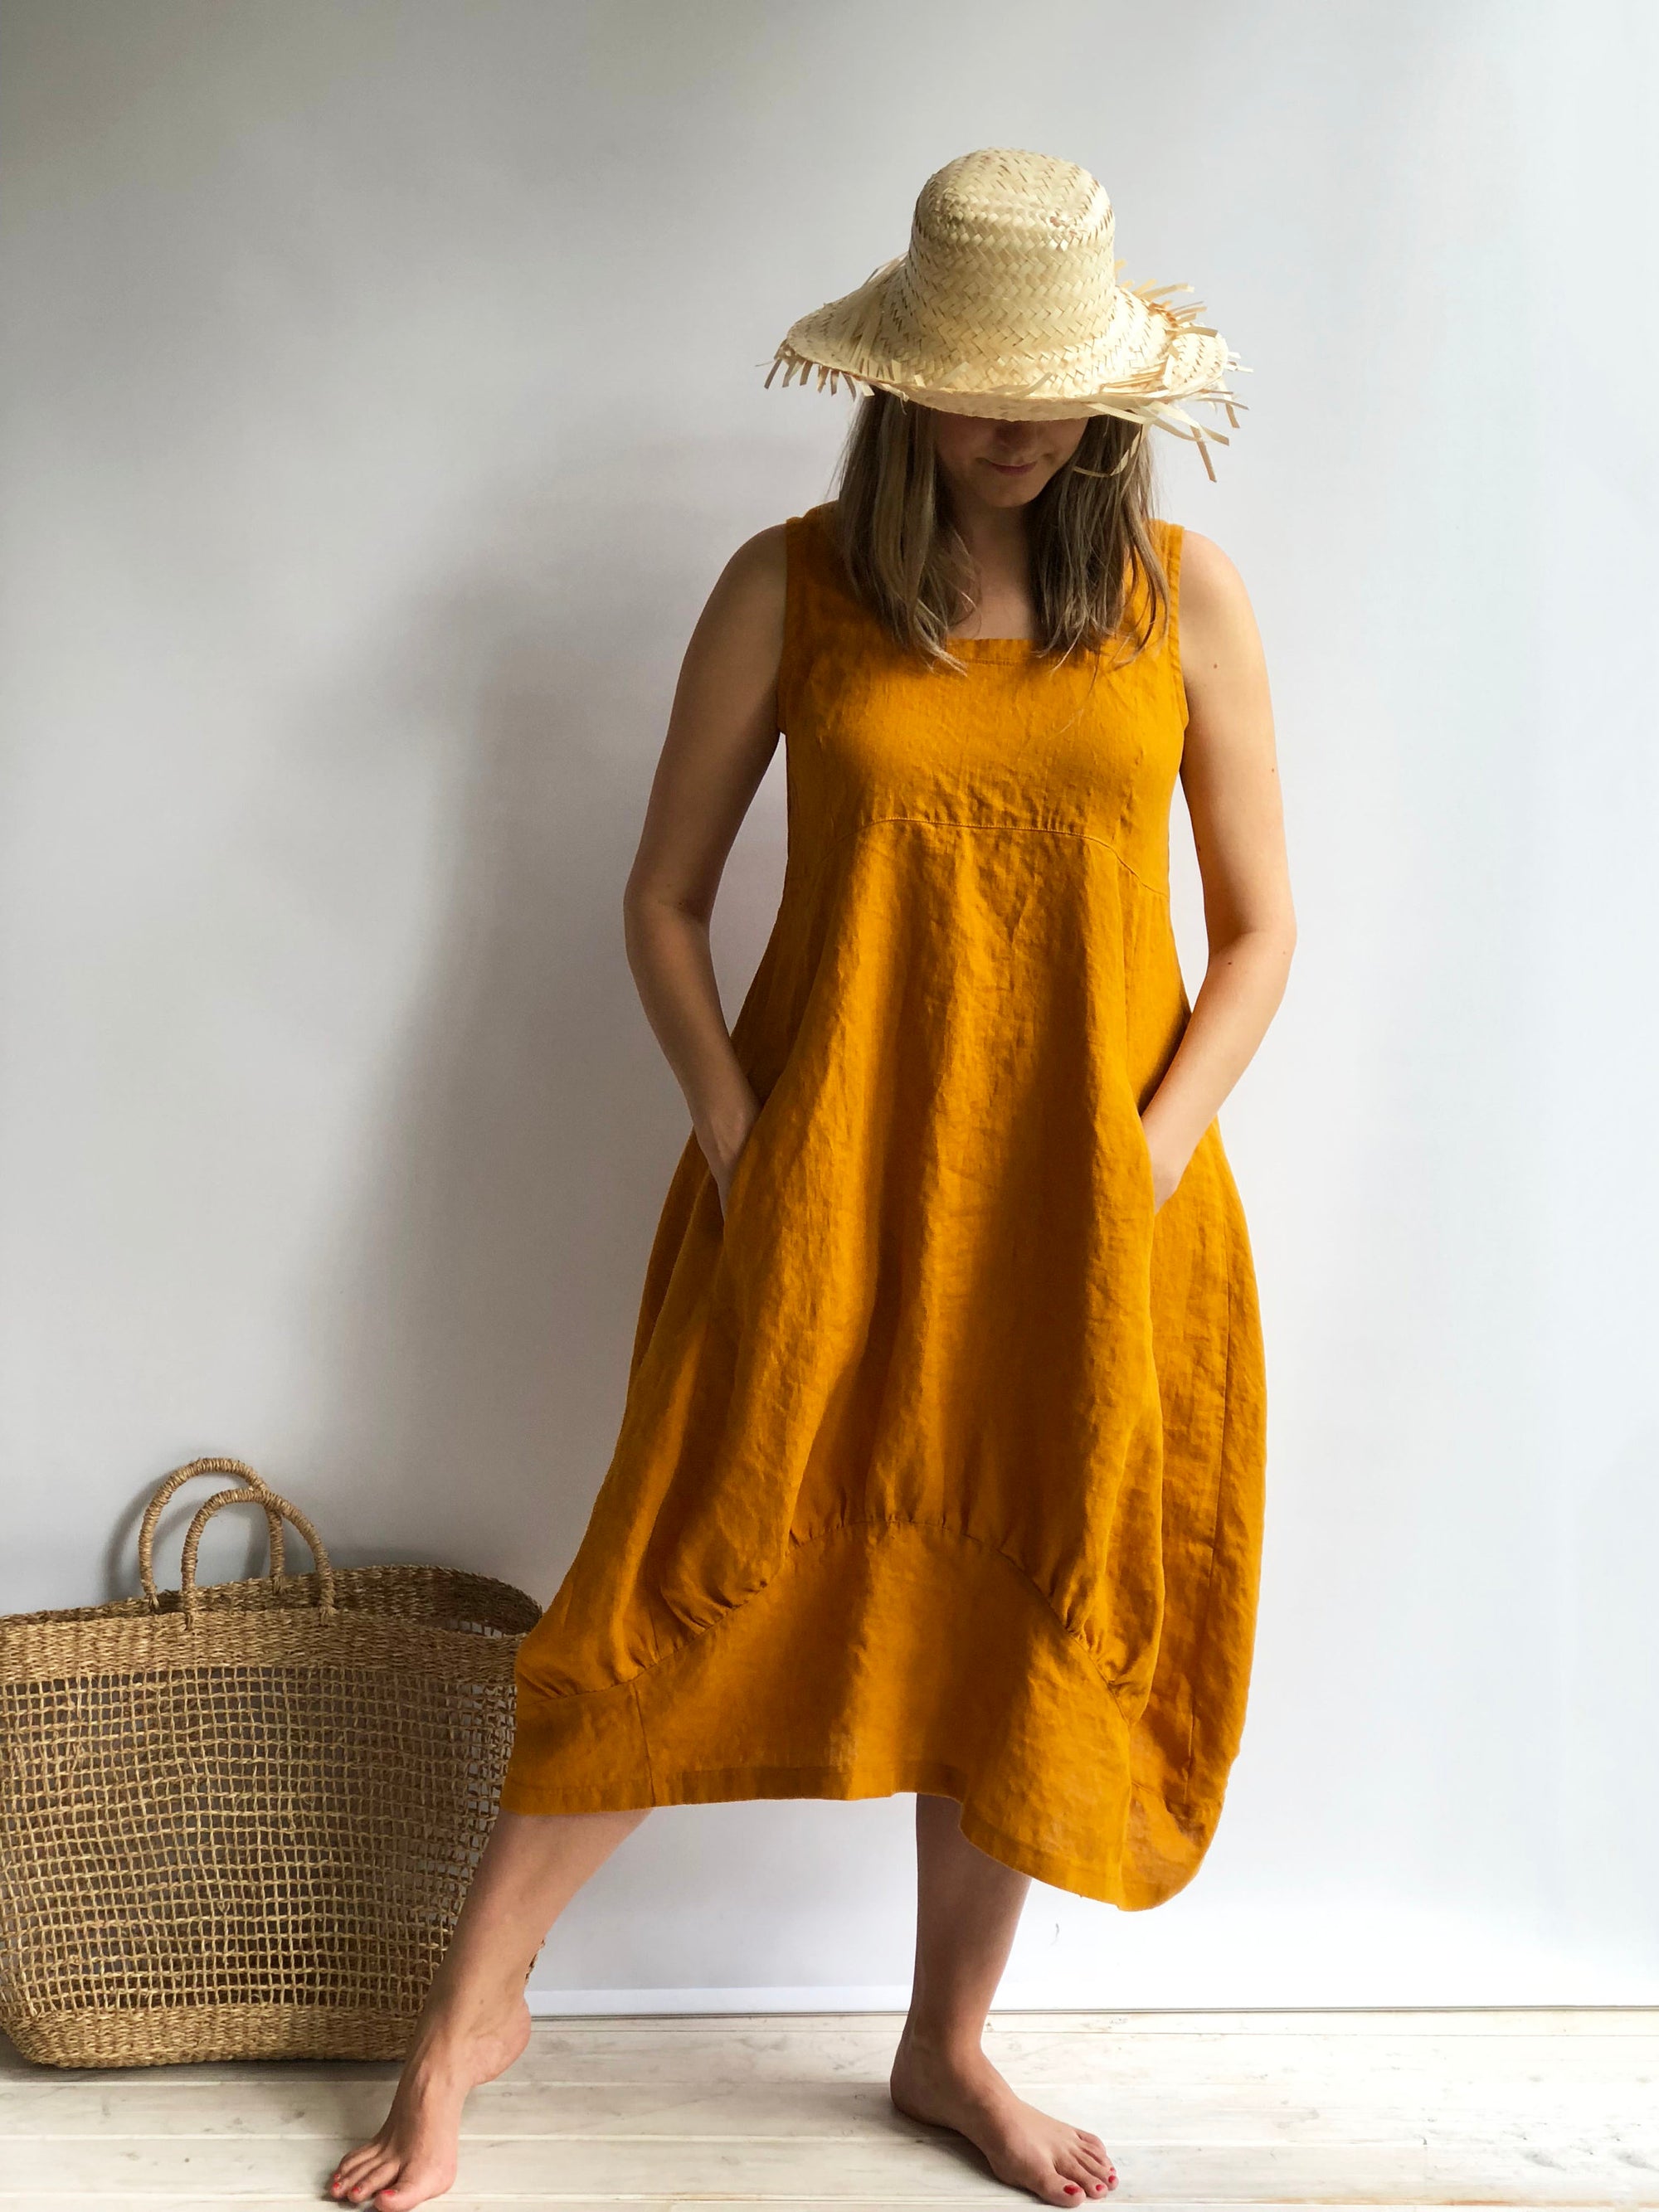 Linen Summer Dress "Samantha" Long Sleeveless Dress, Linen Beach Dress